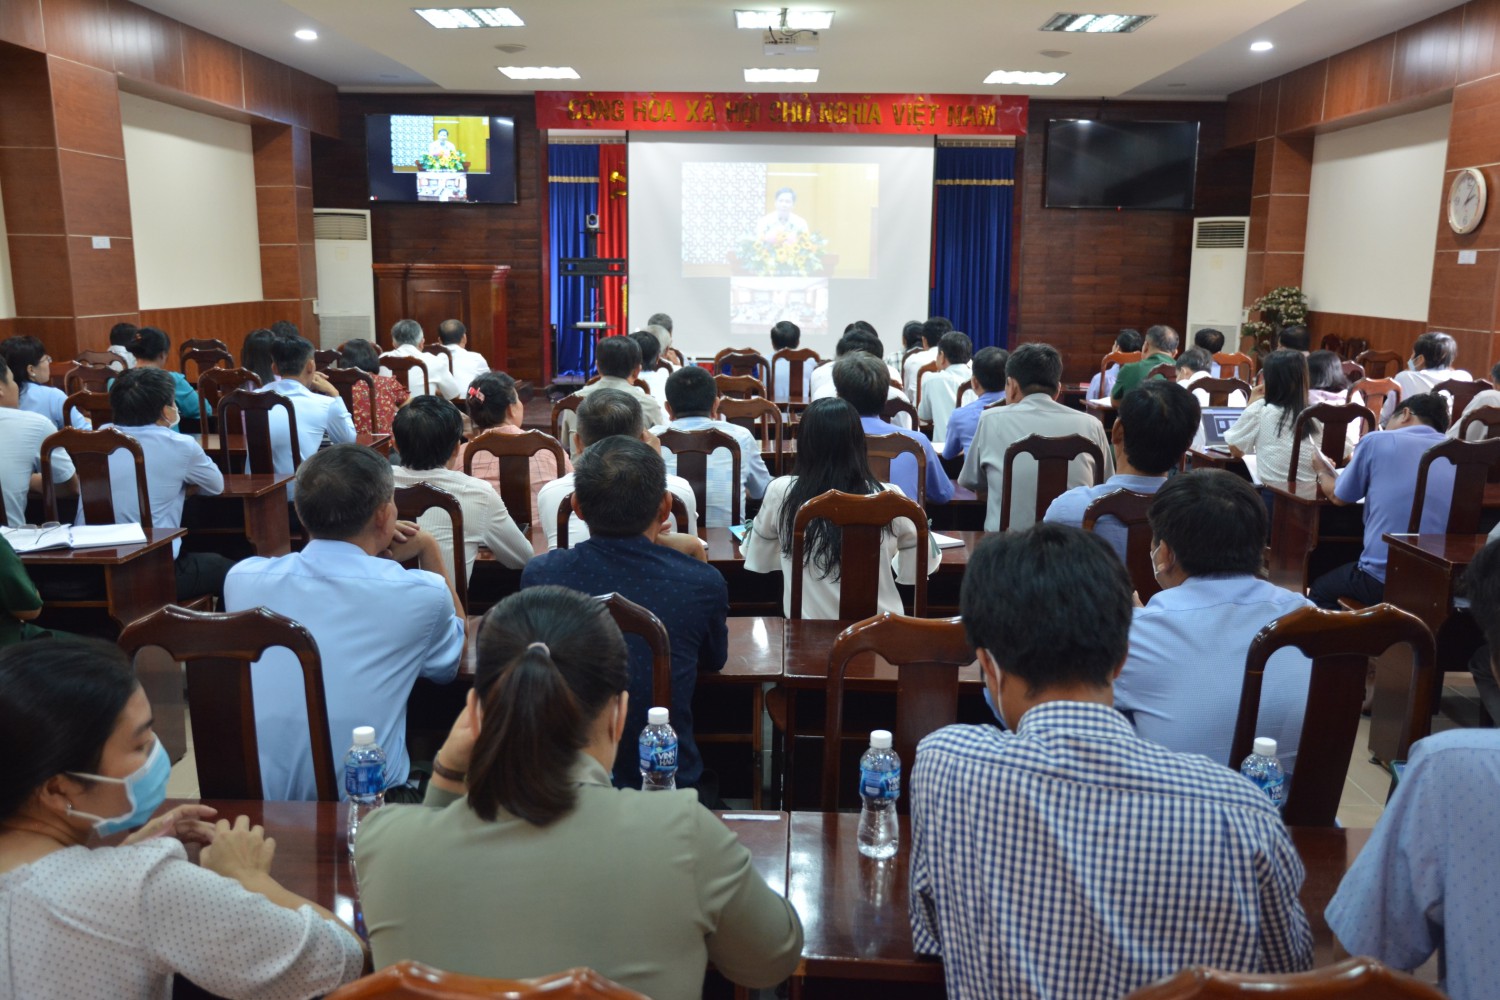 Tân Châu tham dự hội nghị trực tuyến nghe thông báo nhanh nghị quyết hội nghị lần thứ 6 Ban chấp hành Trung ương Đảng khóa XIII